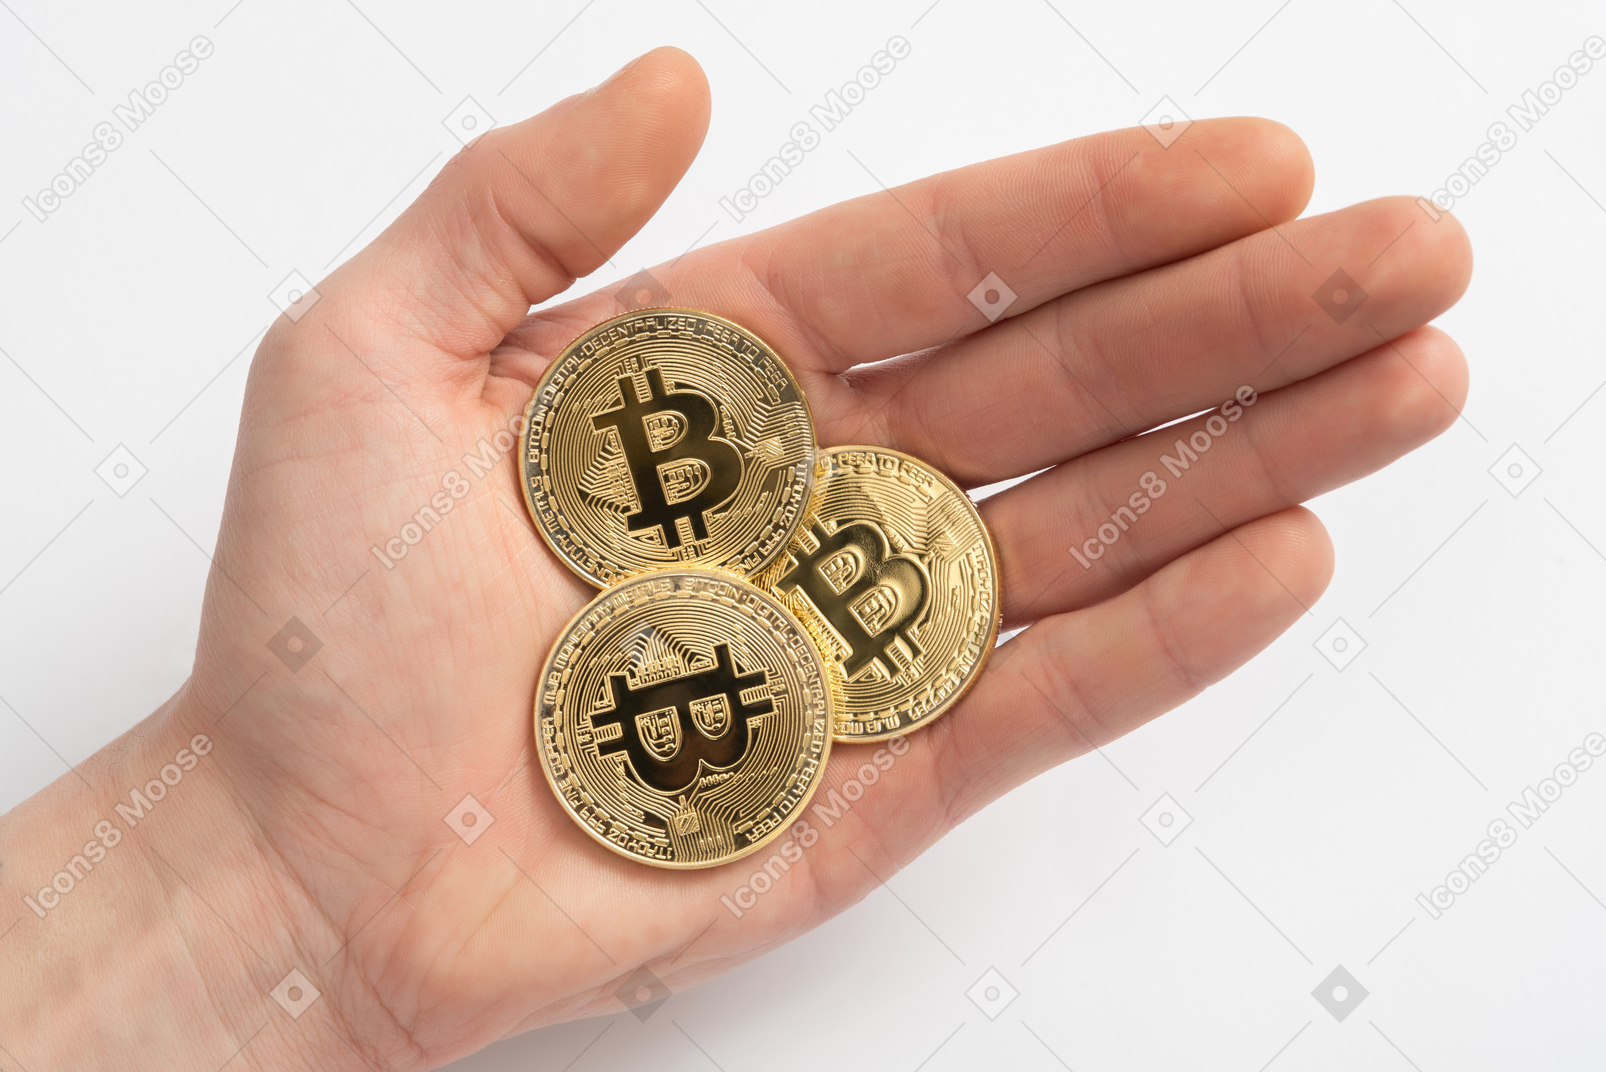 Bitcoin cash